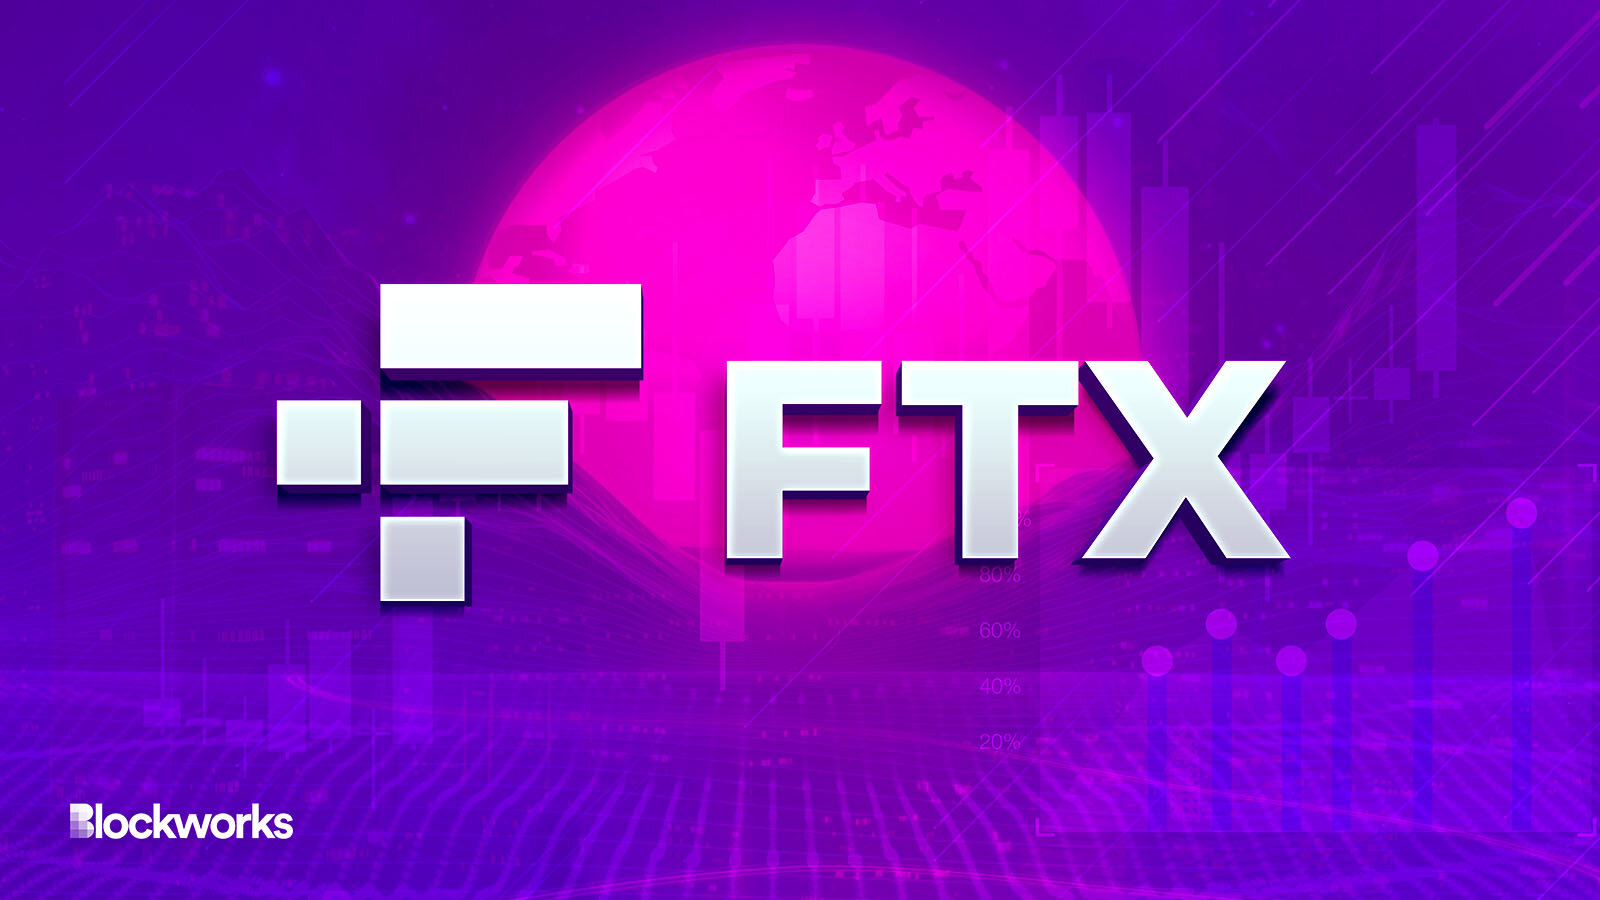 FTX Crypto ter waarde van $ 3.5 miljard in handen van de regelgever van de Bahama's